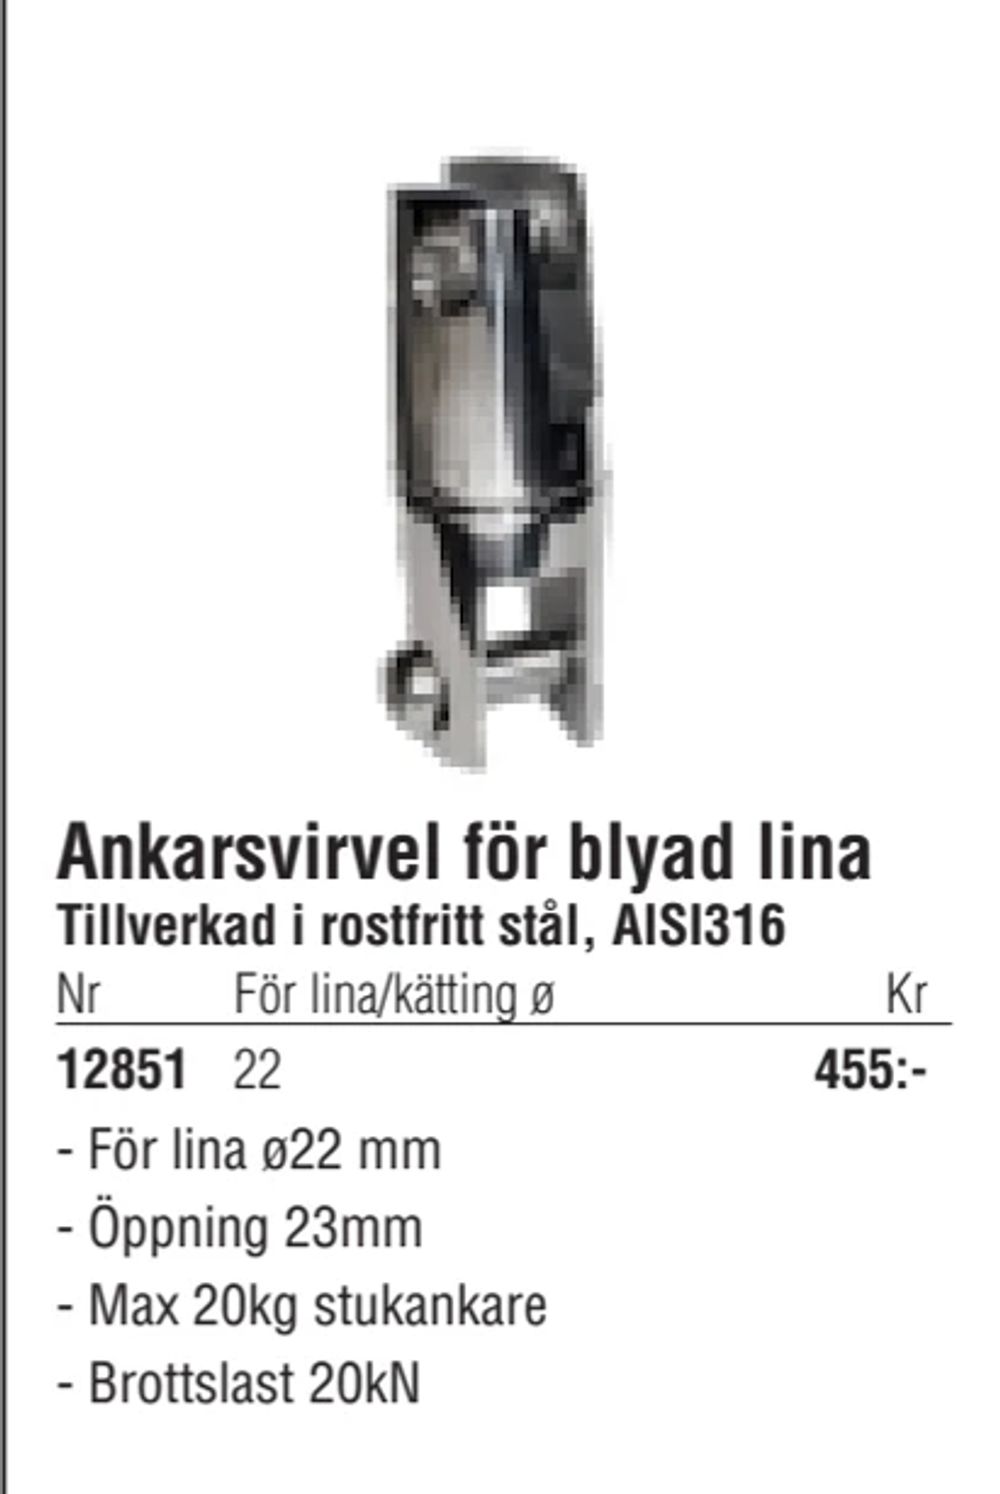 Erbjudanden på Ankarsvirvel för blyad lina från Erlandsons Brygga för 455 kr